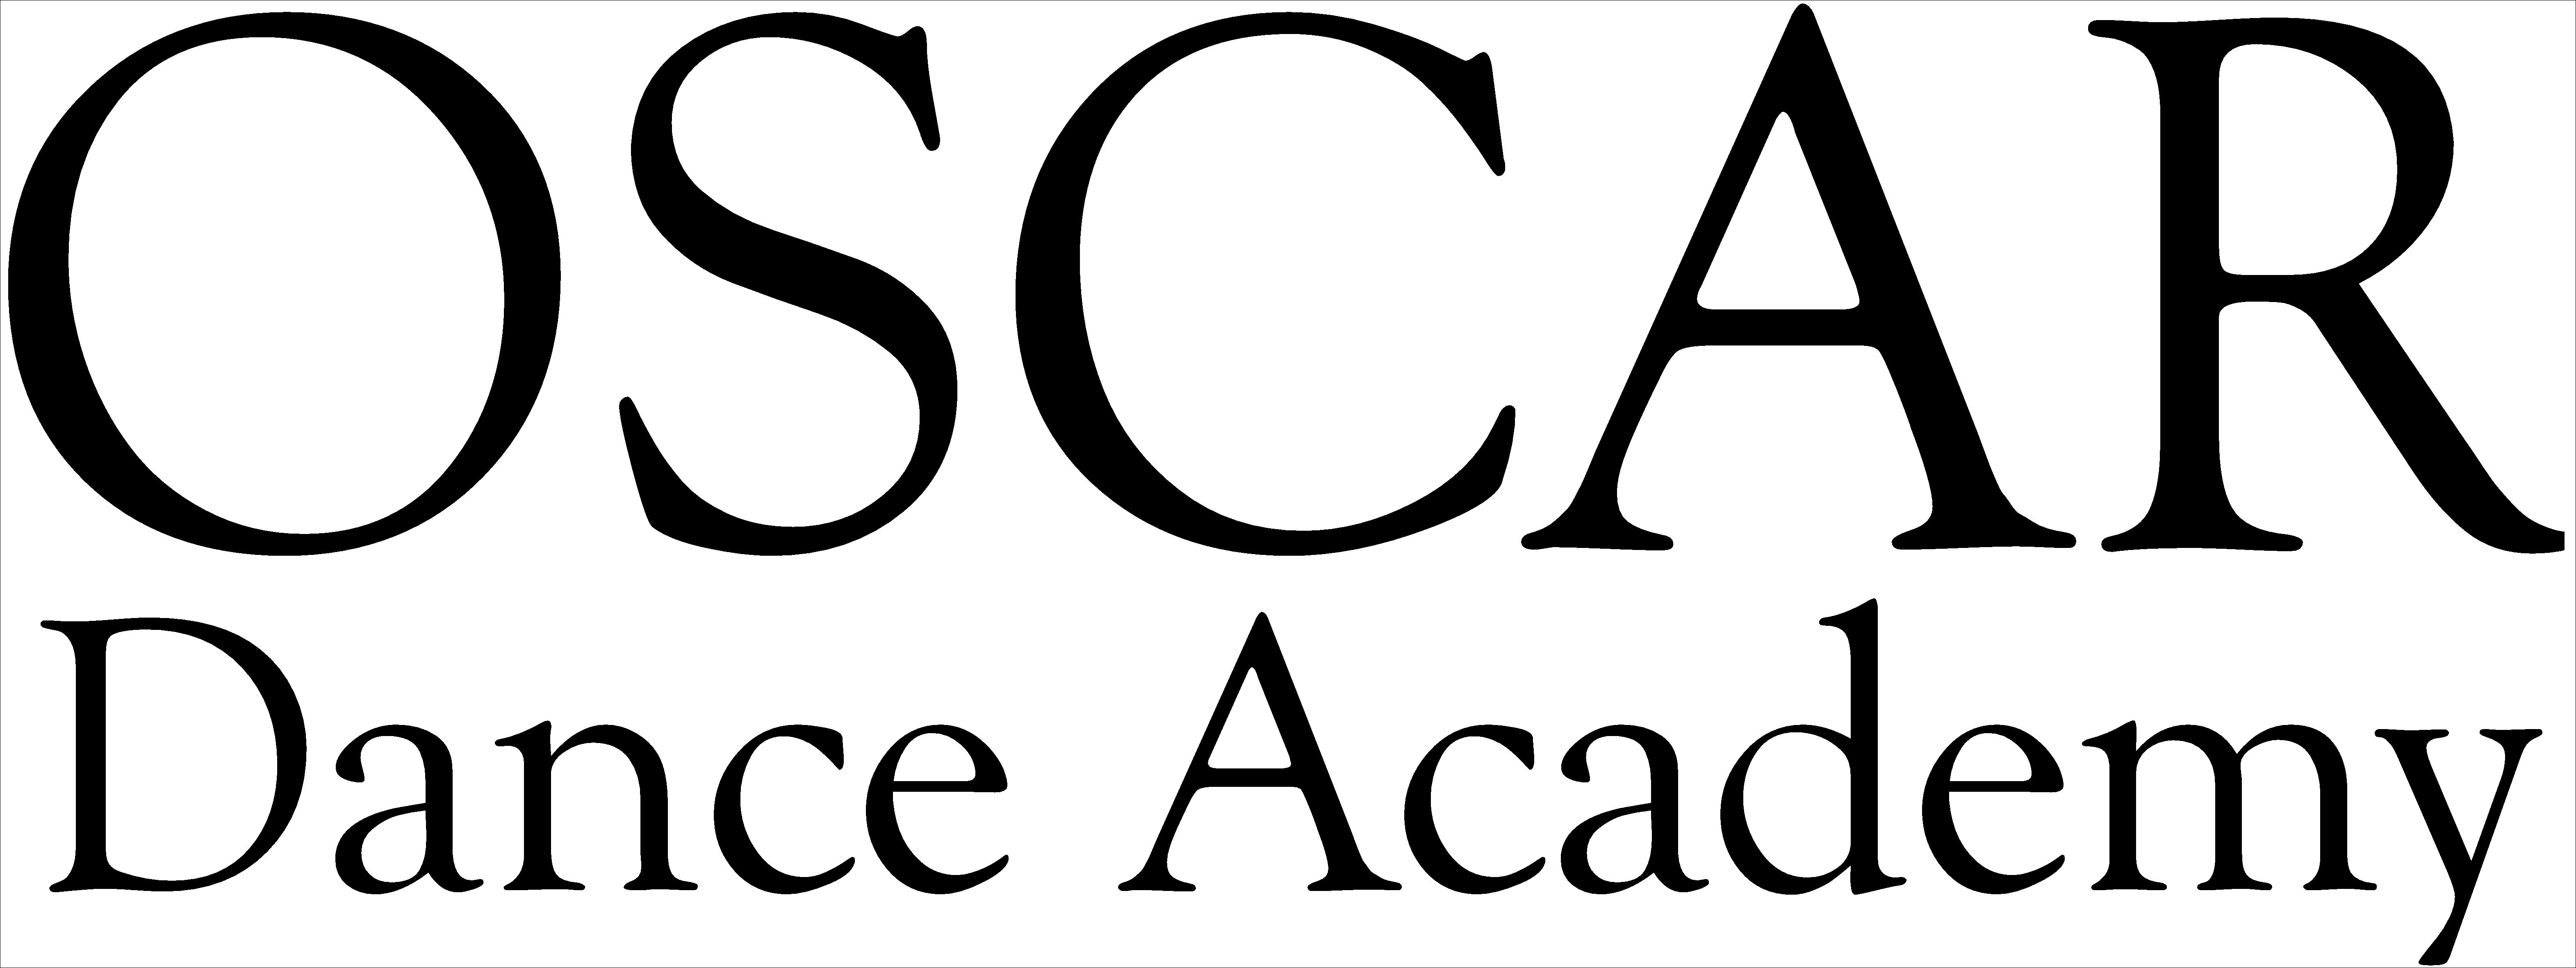 OSCAR Dance Academy